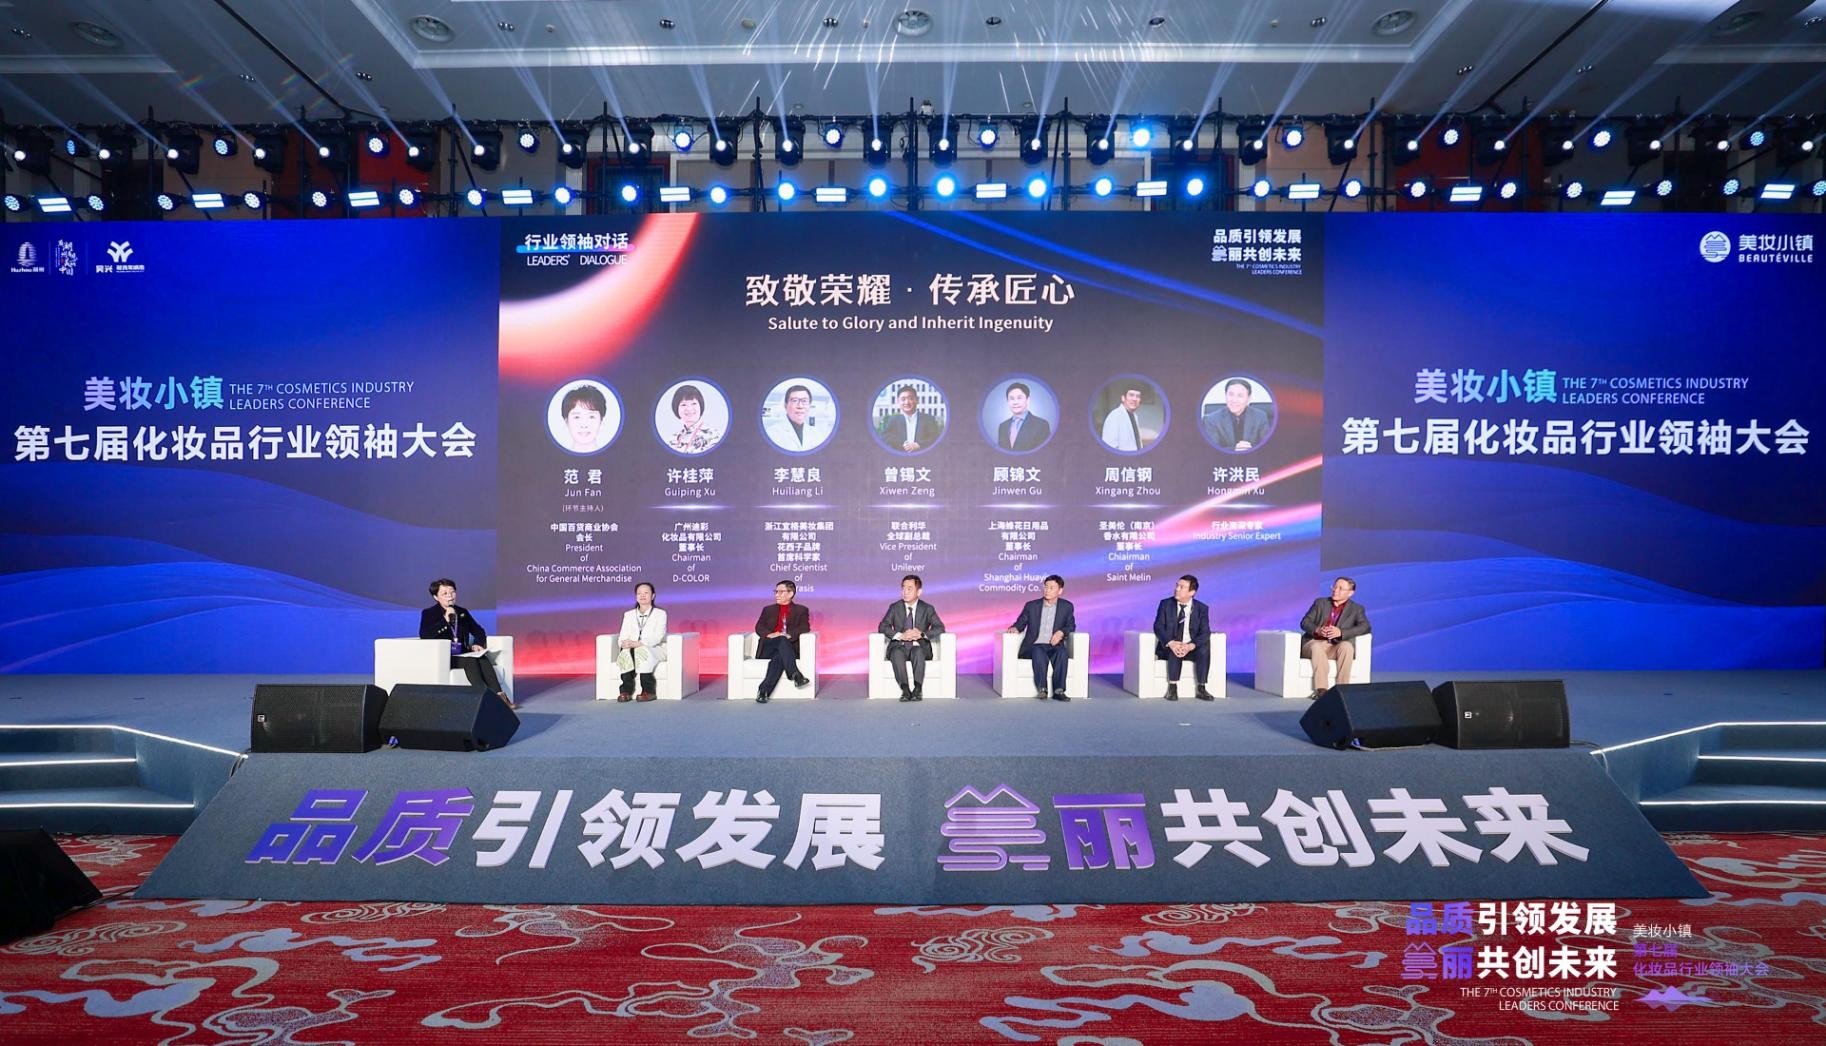 世界看见中国美—美妆小镇第七届化妆品行业领袖大会成功举行